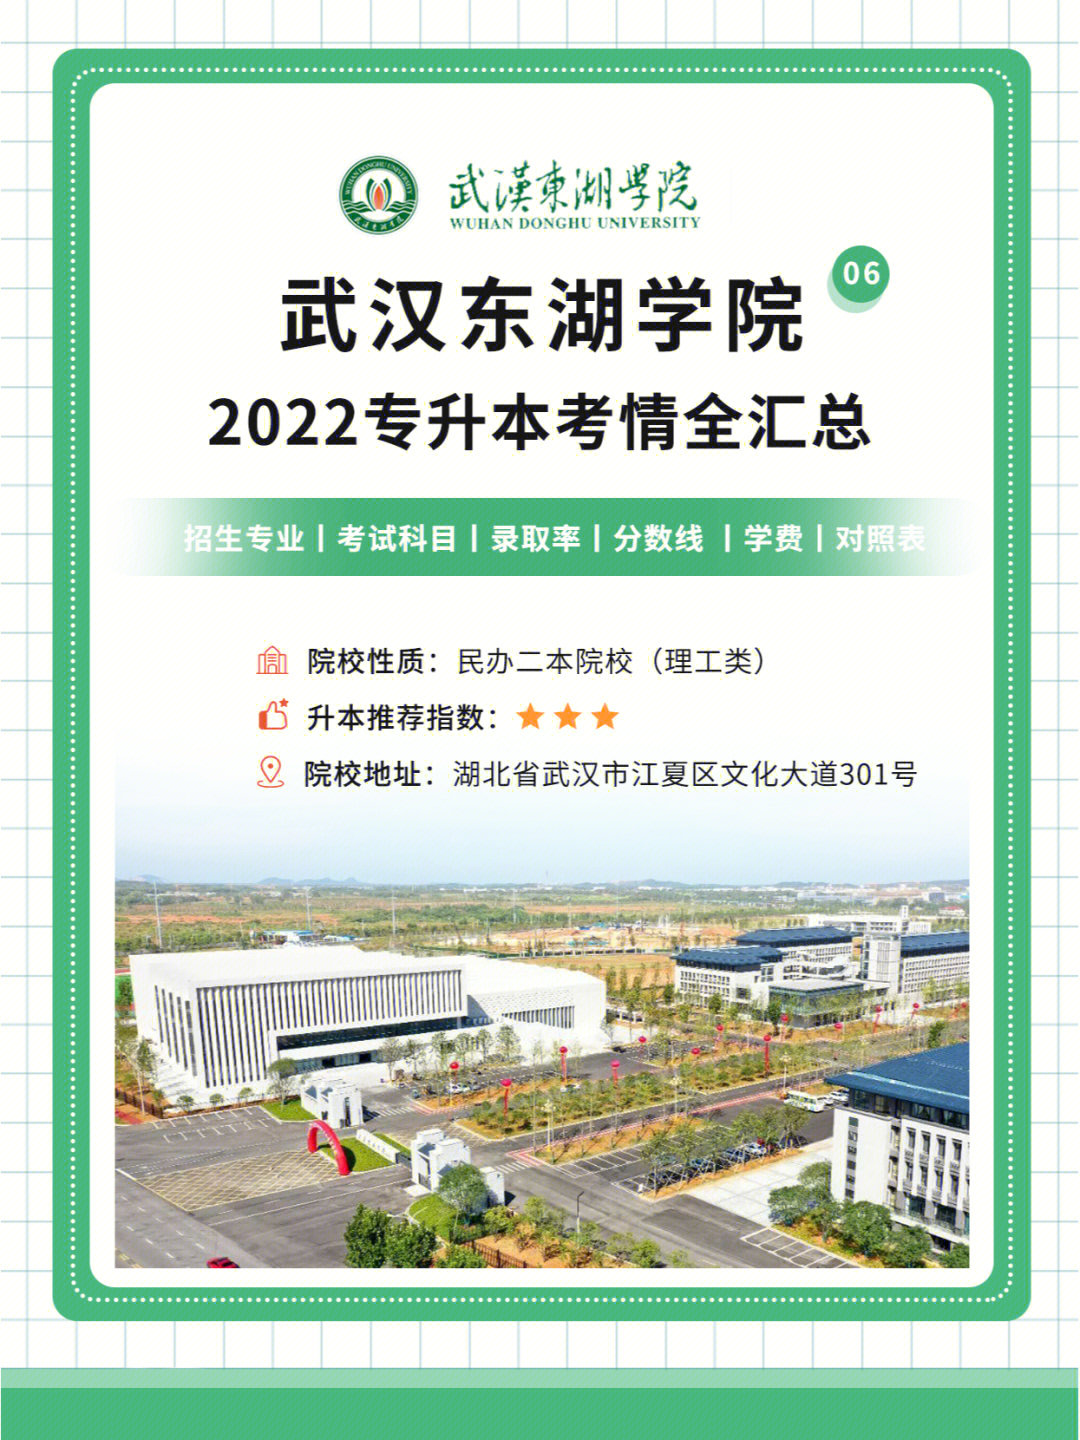 考情盘点>>武汉东湖学院2022专升本大汇总